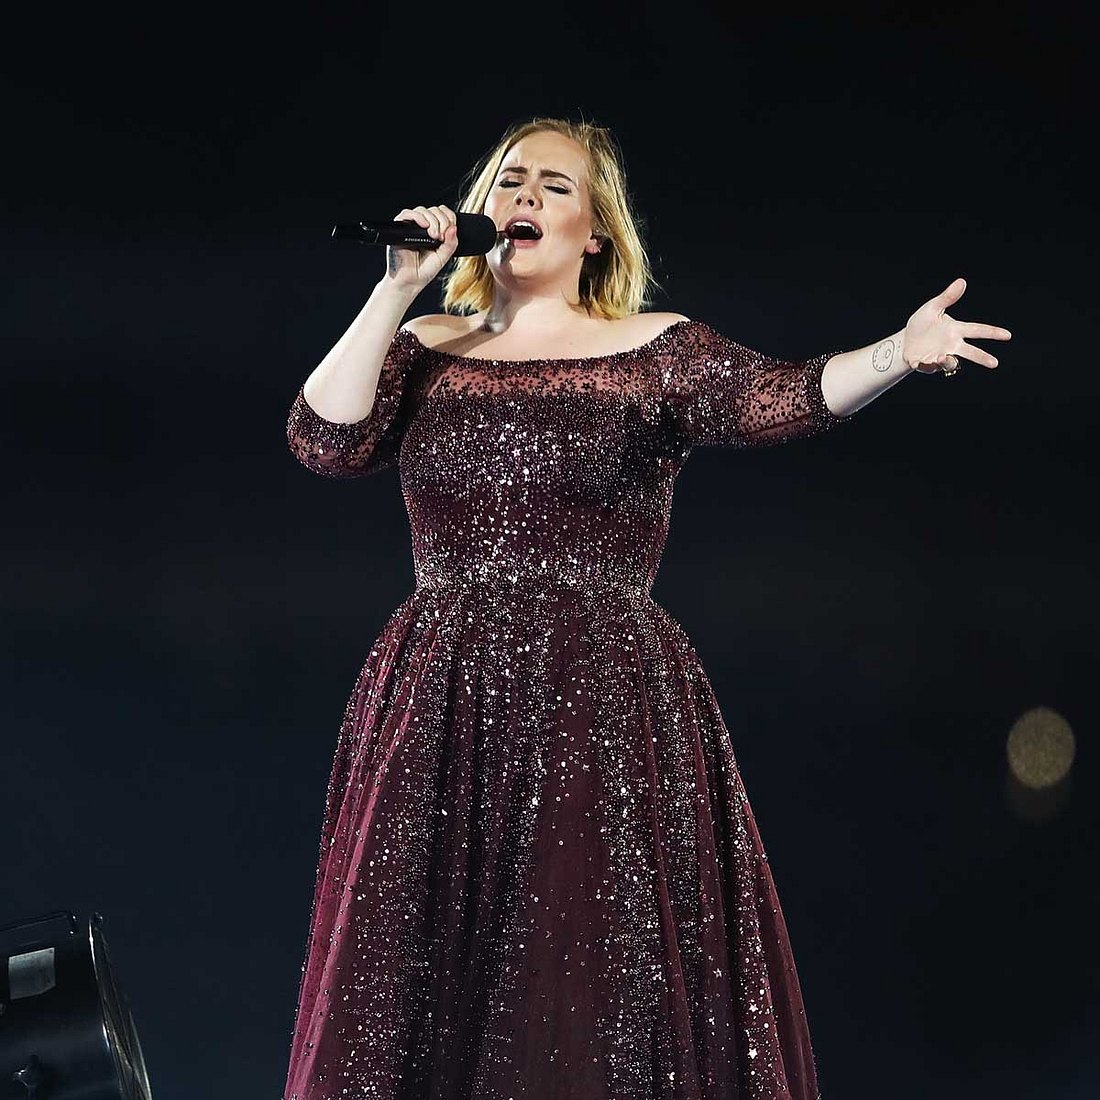 Die Phobien der Stars: Adele hasst Seemöwen